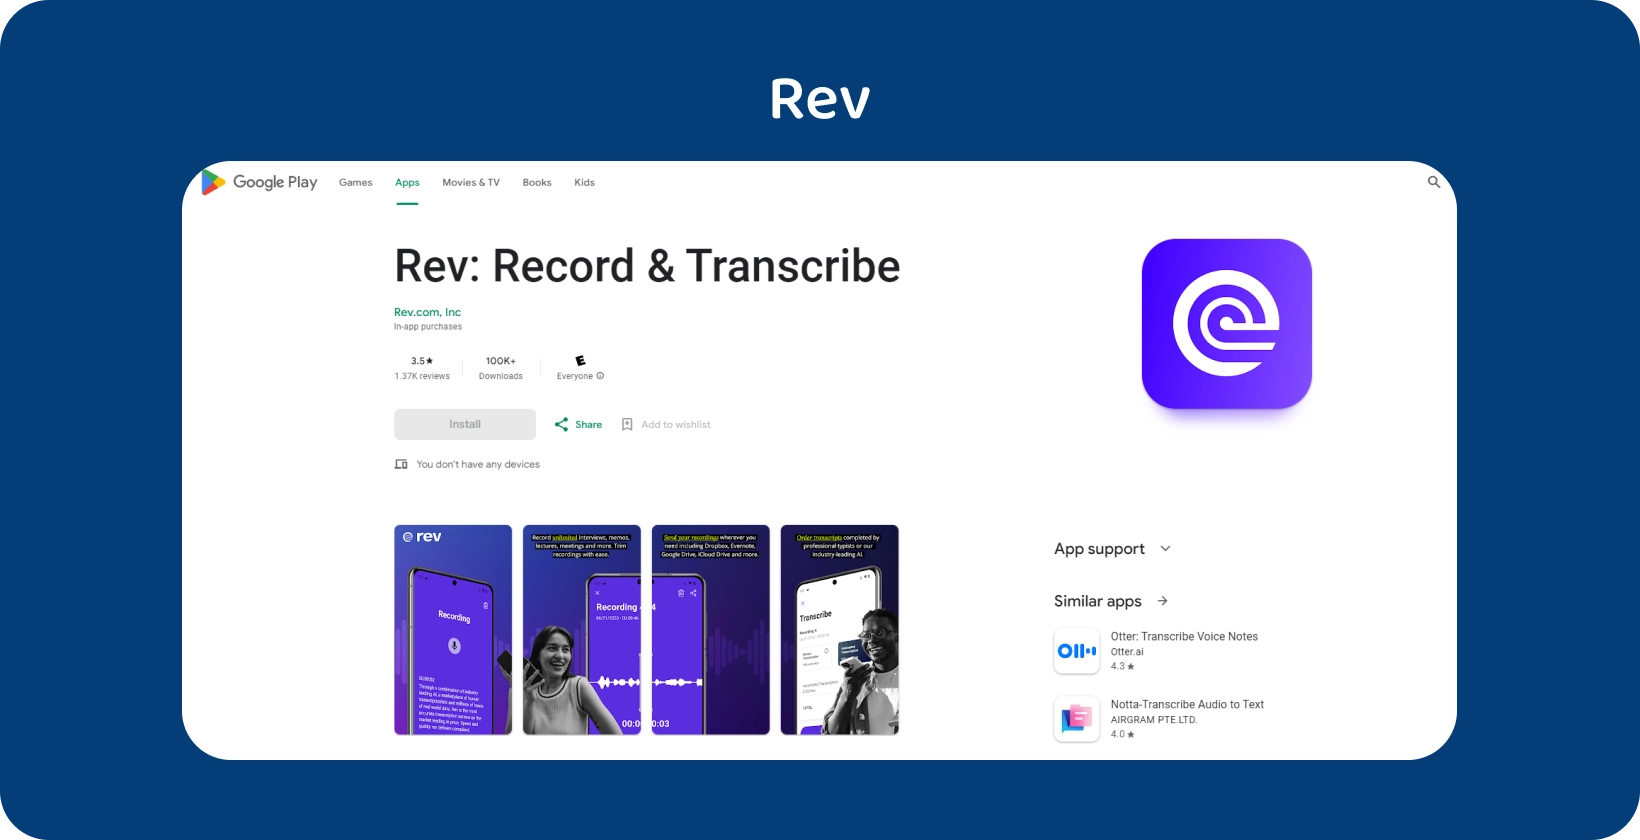 Google Play Store visning af Rev app, der fremhæver funktioner til optagelse og transskription på Android enheder.